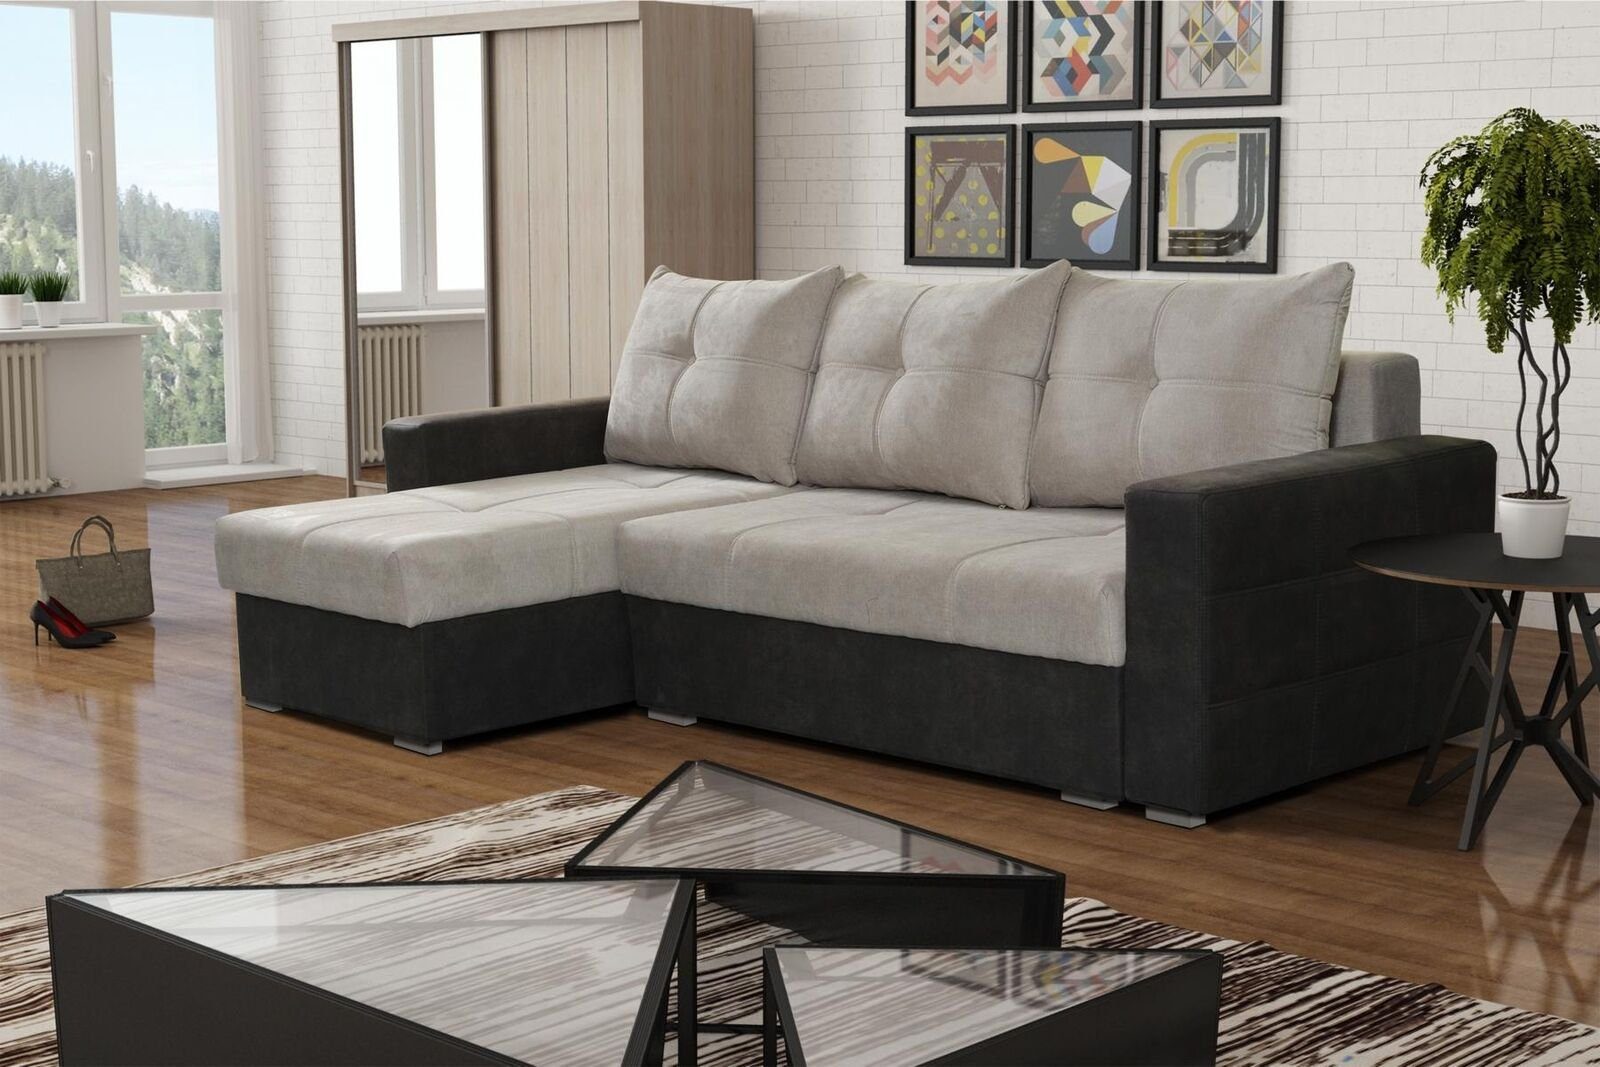 JVmoebel Ecksofa, Luxus Ecke Couch L-Form Edel Modern Sofas Italien Möbel Textil Beige | Ecksofas